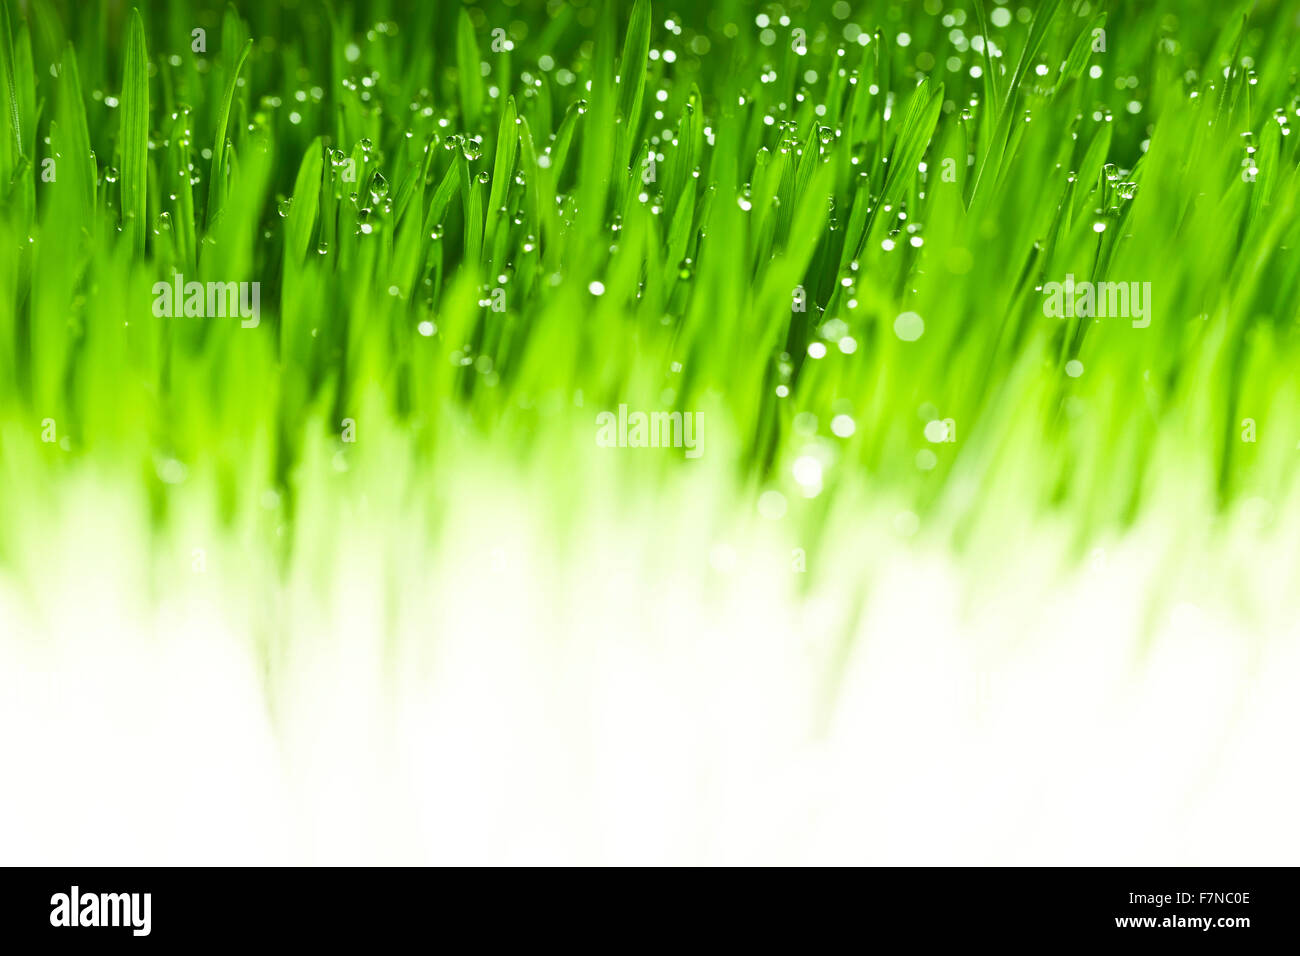 Lush, fond d'herbe verte fraîche avec des gouttes d'humidité Banque D'Images